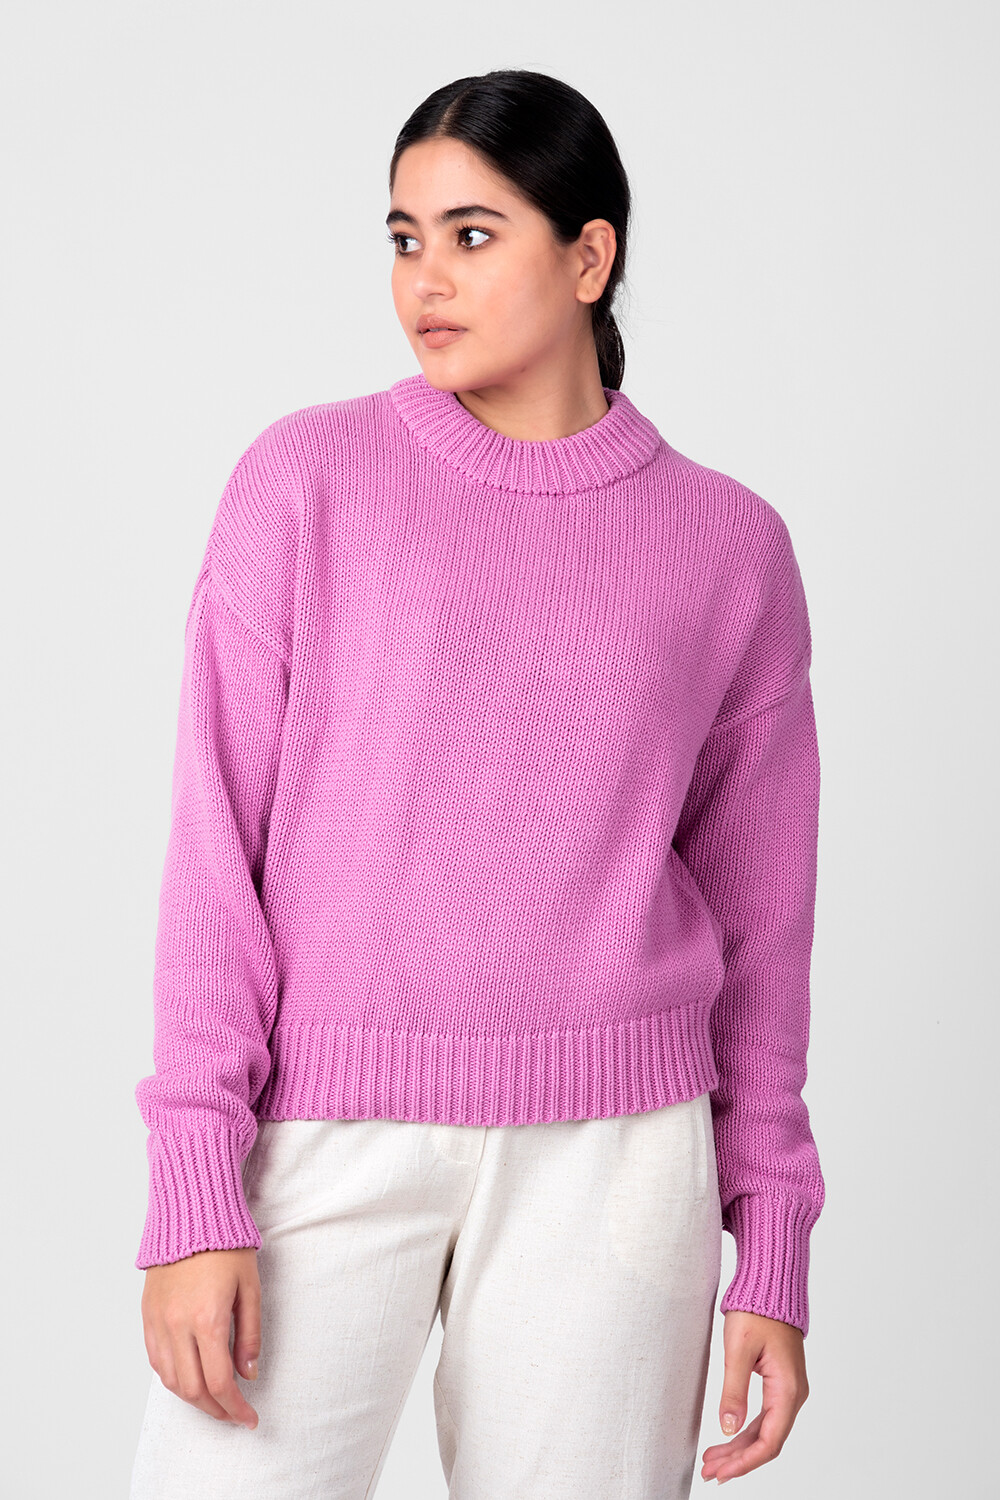 Sweater Solomun Violeta Claro